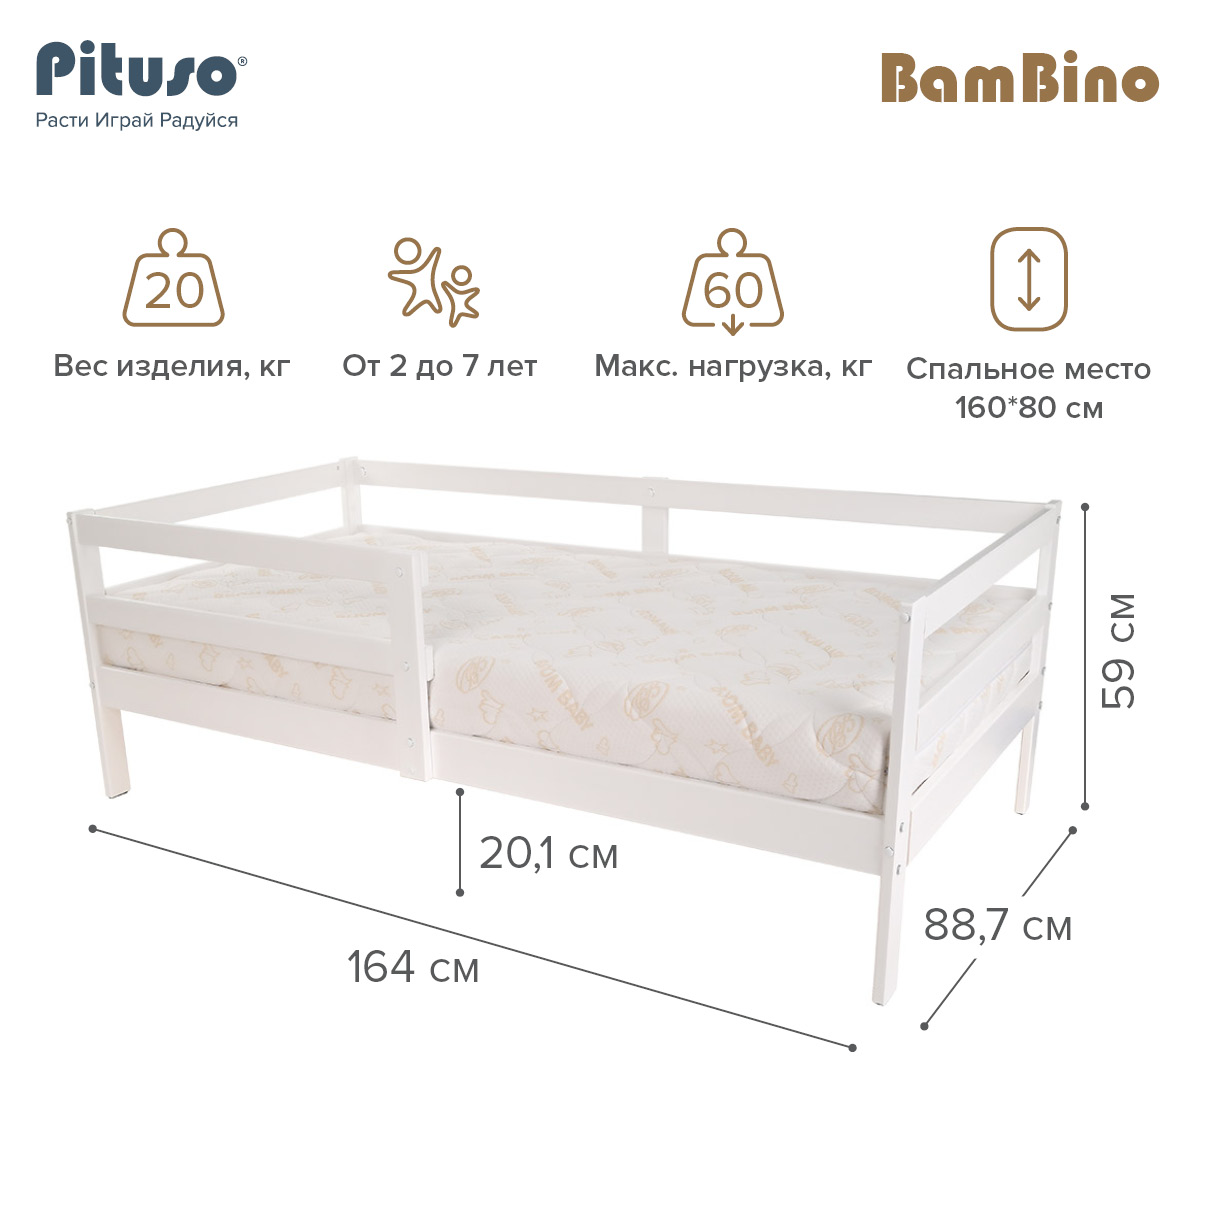 Кровать подростковая Pituso BamBino белый кровать подростковая pituso bambino капучино